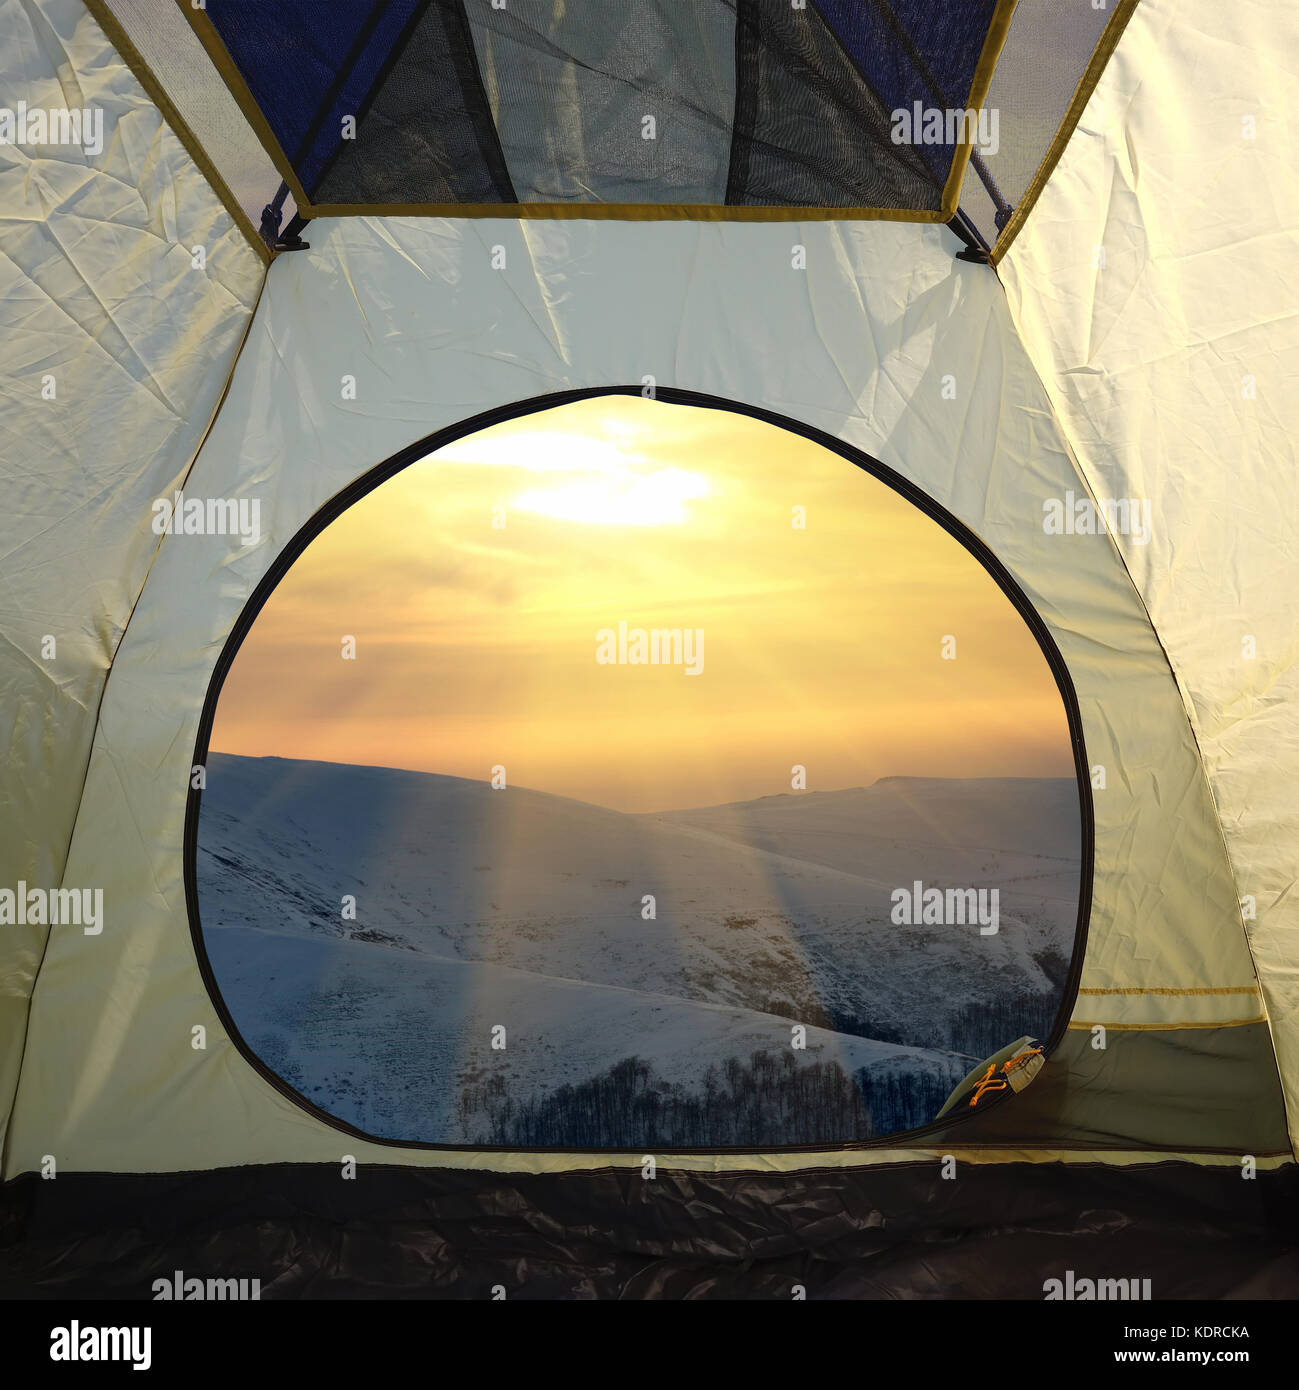 Vista dall'interno di una tenda sulle montagne paesaggio. Stile di vita viaggio avventura concetto vacanze outdoor Foto Stock